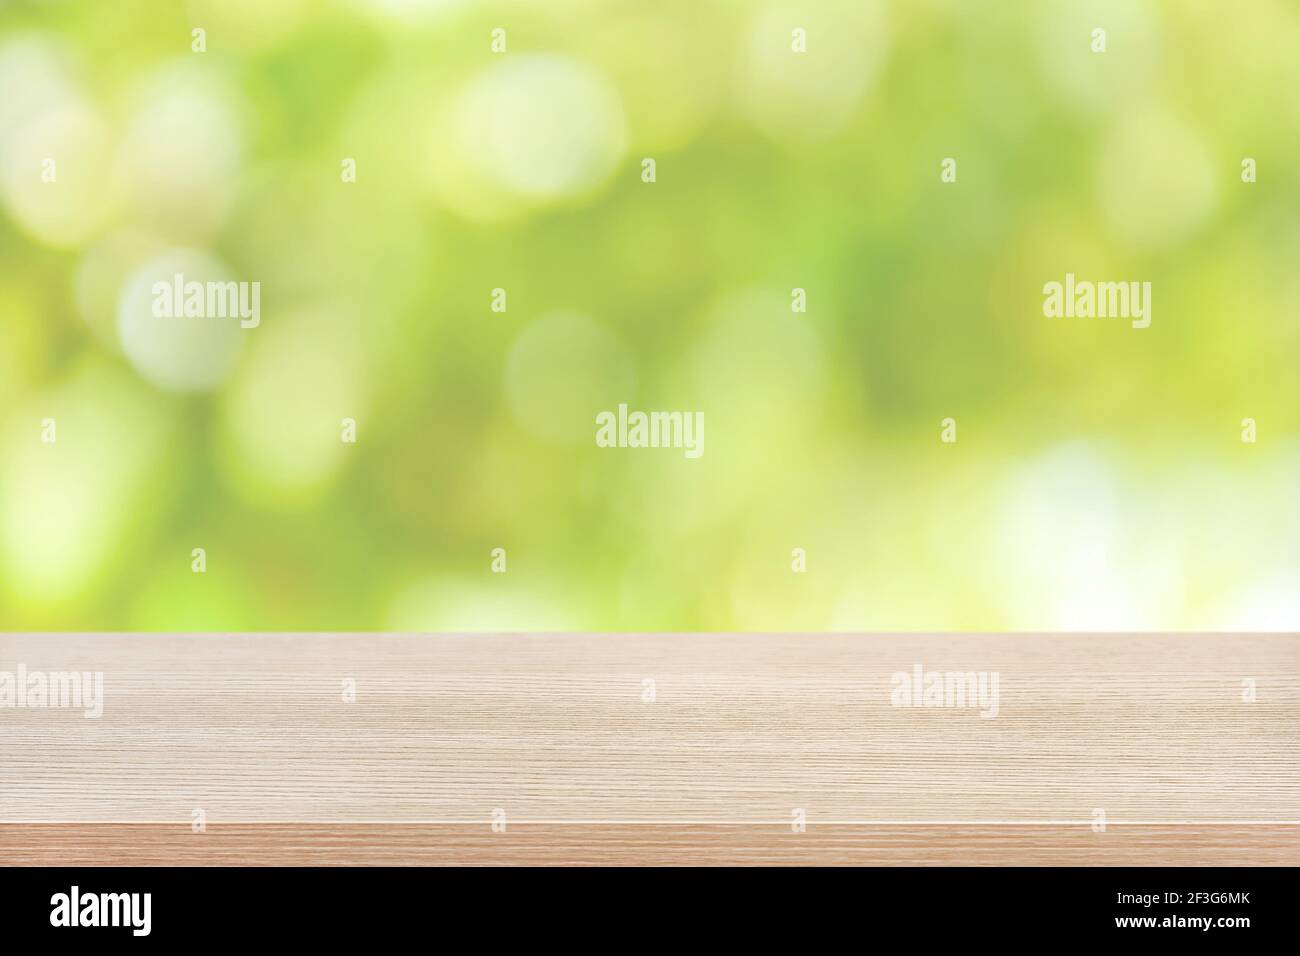 Holztischplatte auf grünem Bokeh abstrakter Hintergrund - Dose Für die Montage oder Anzeige Ihrer Produkte verwendet werden Stockfoto